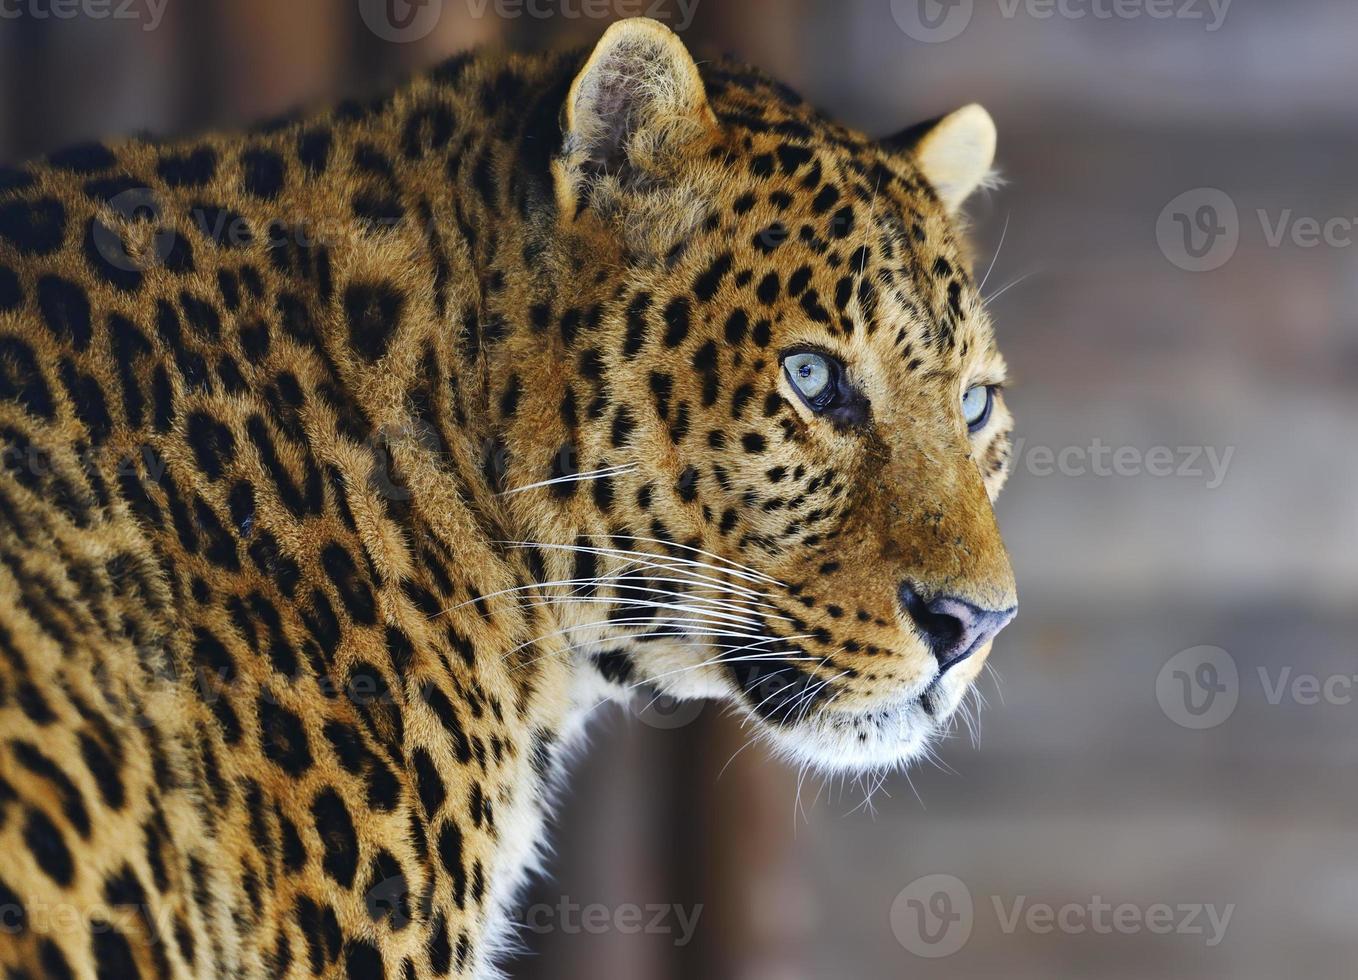 leopard foto